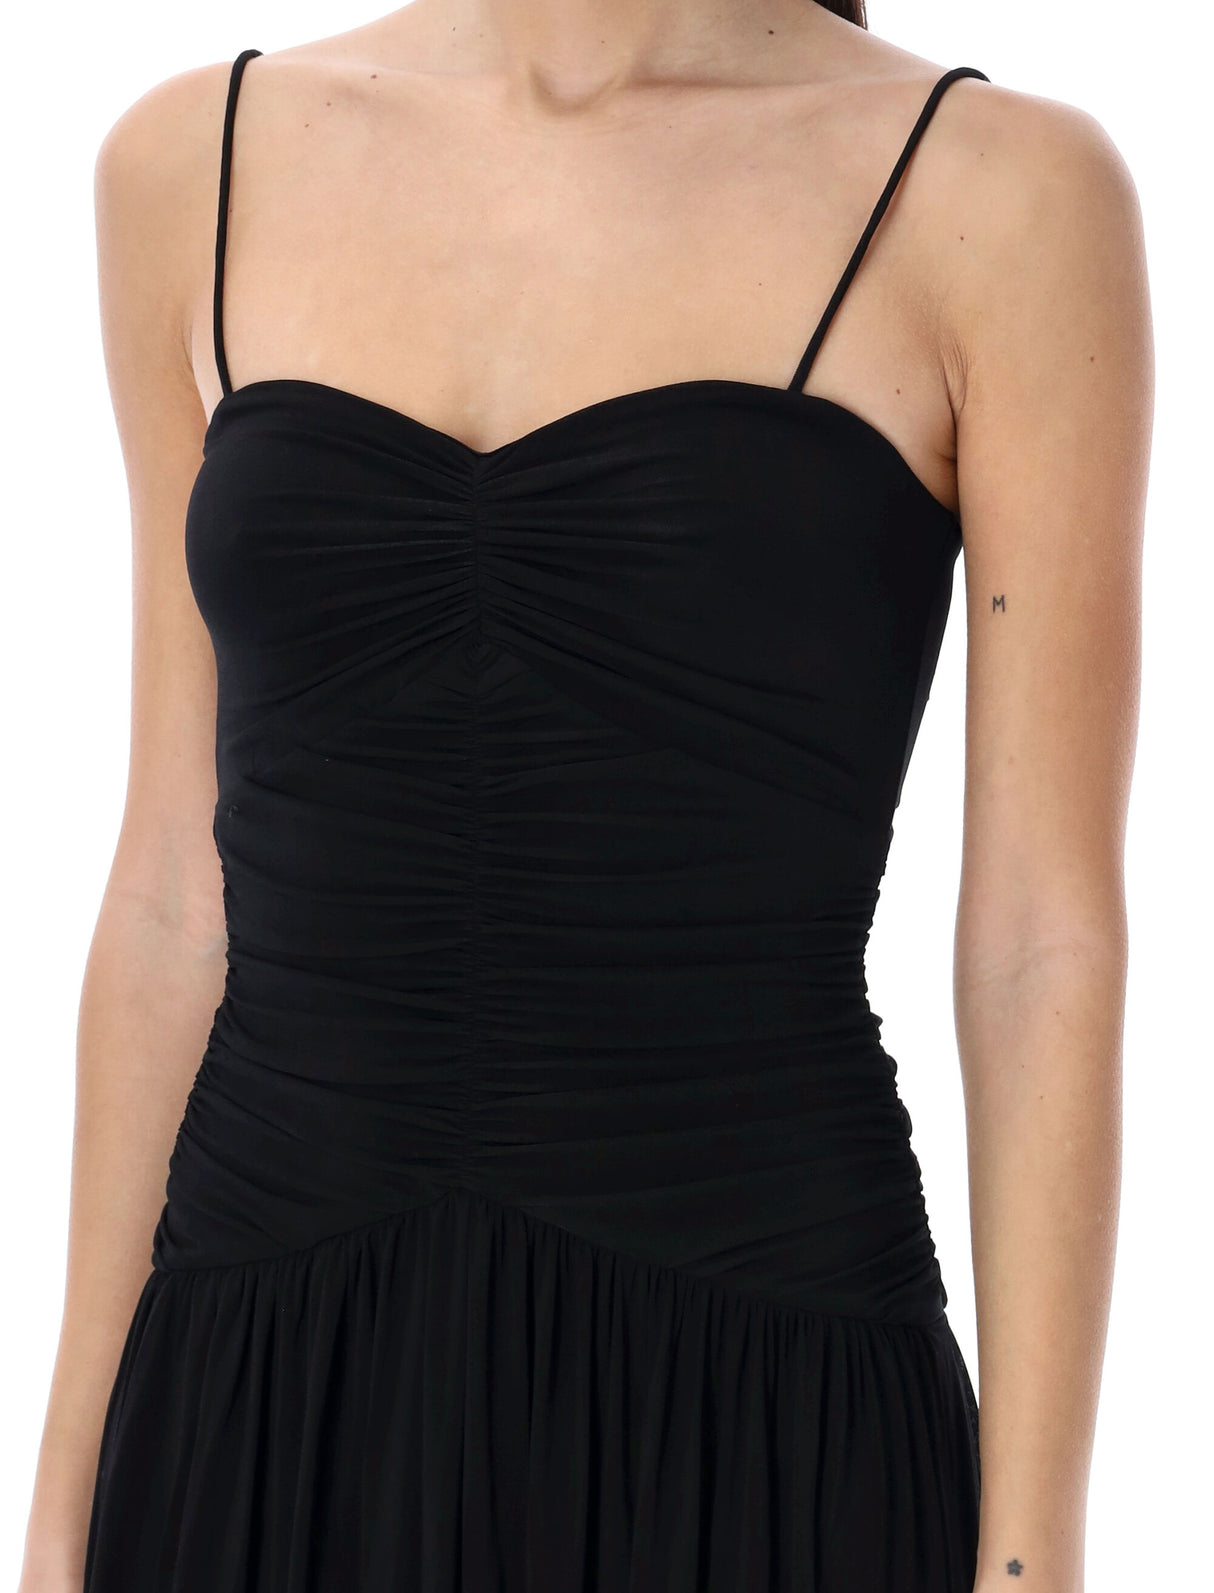 فستان ميدي أسود بتصميم ناعم وخصر منخفض من إيزابيل ماران